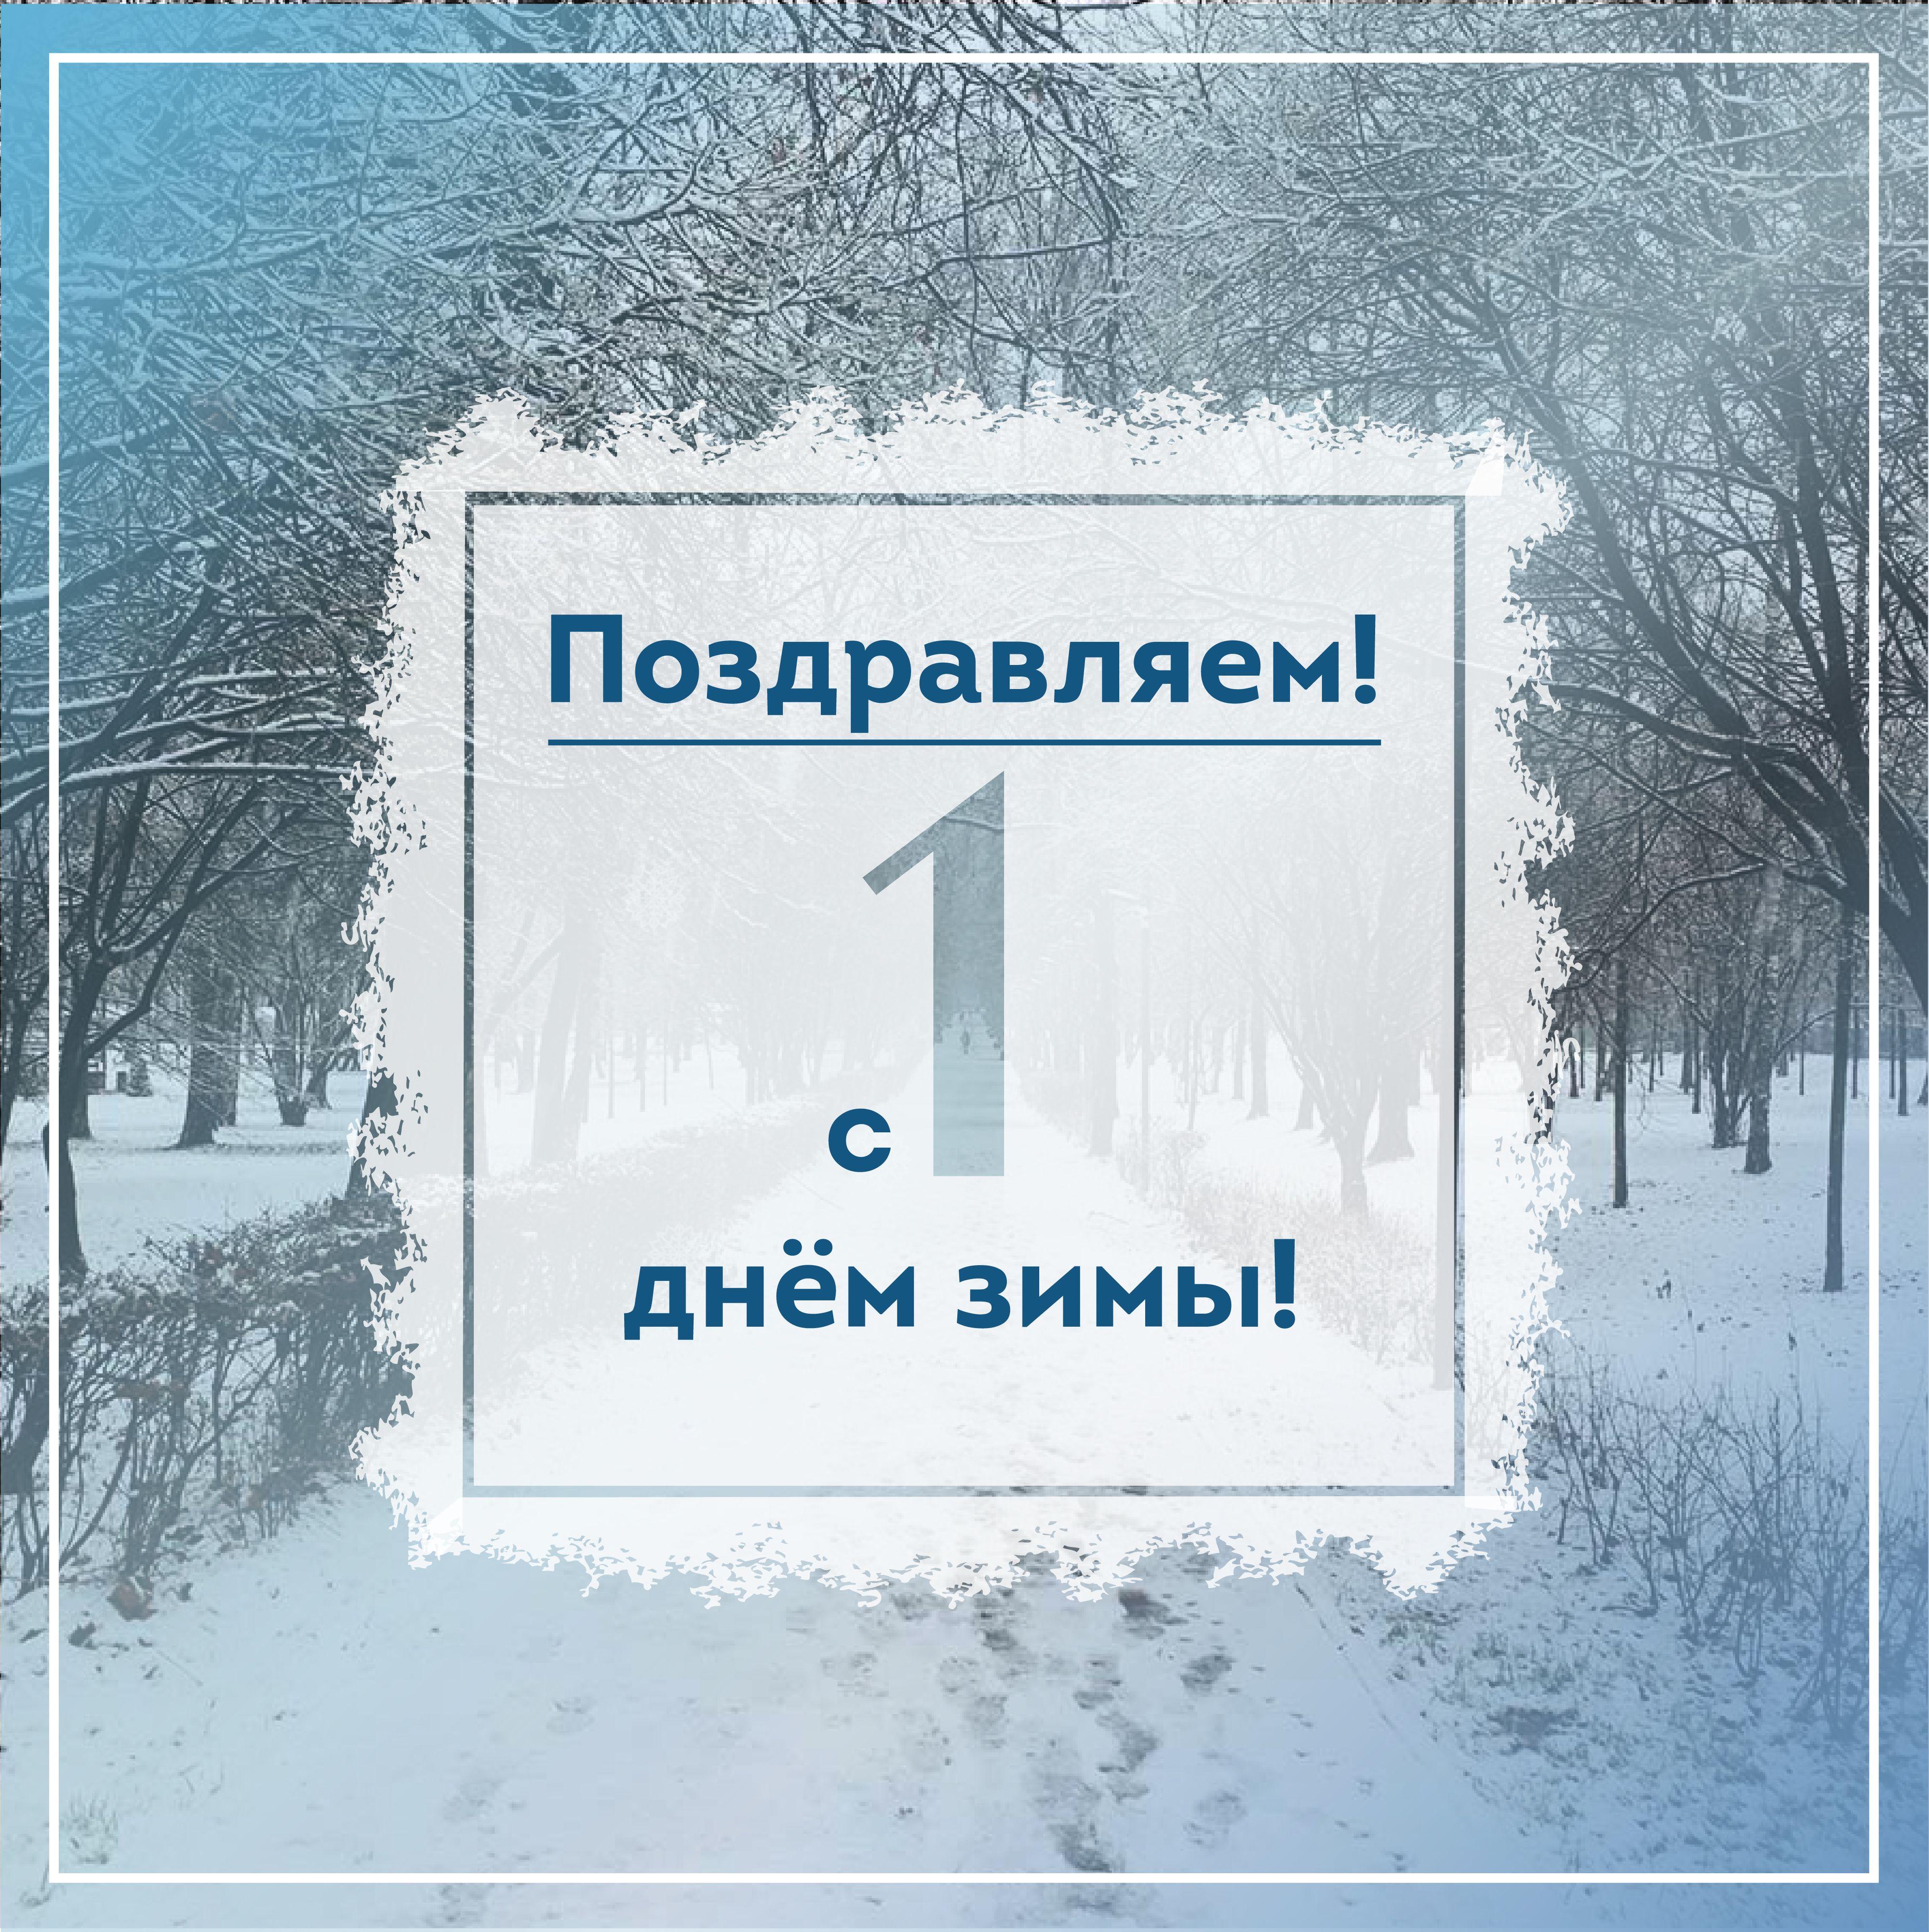 Картинки \"С Первым днём зимы\" красивые и прикольные с 1 декабря!